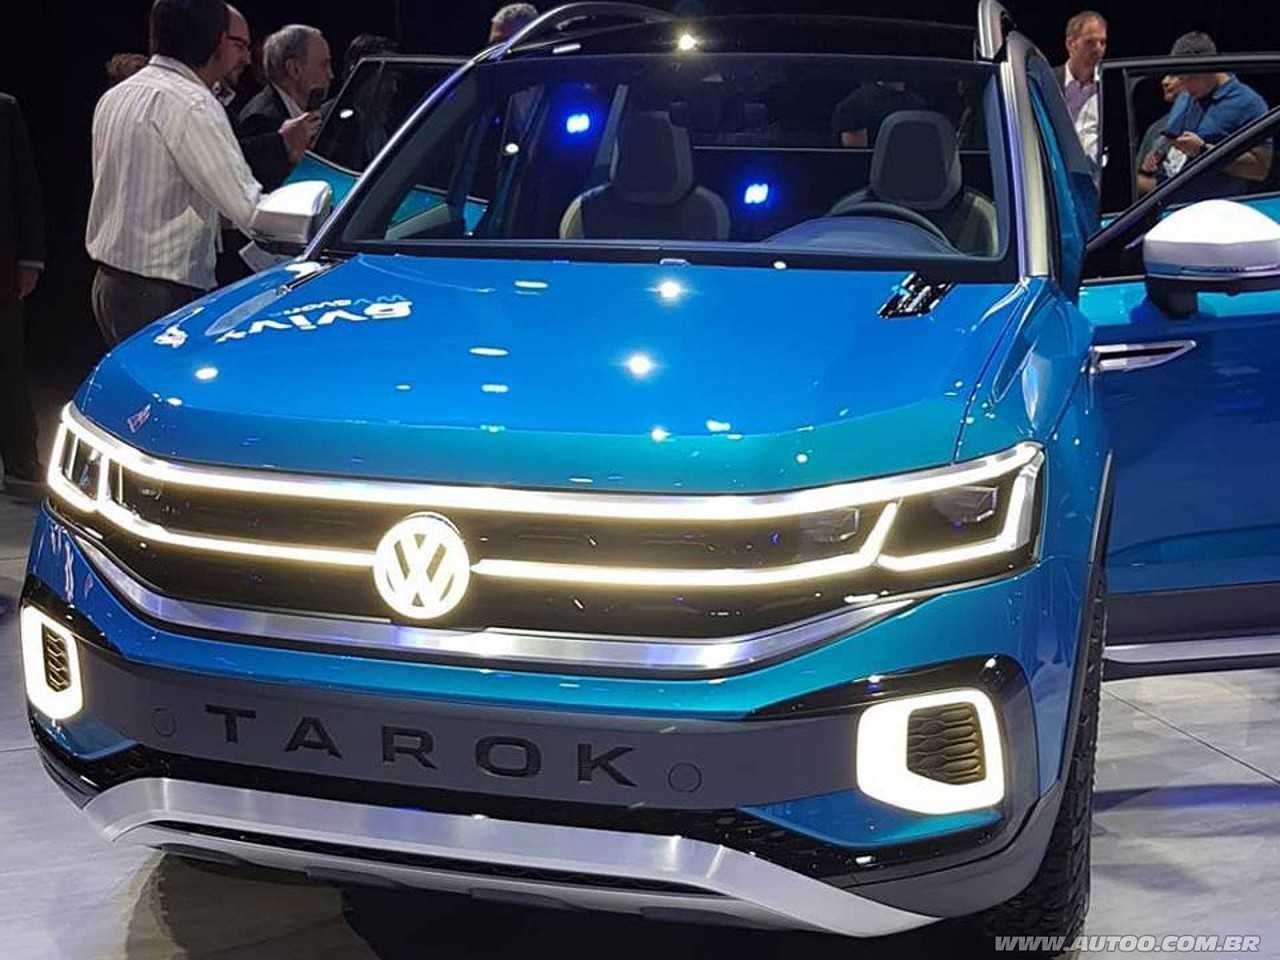 VolkswagenTarok 2020 - ngulo frontal